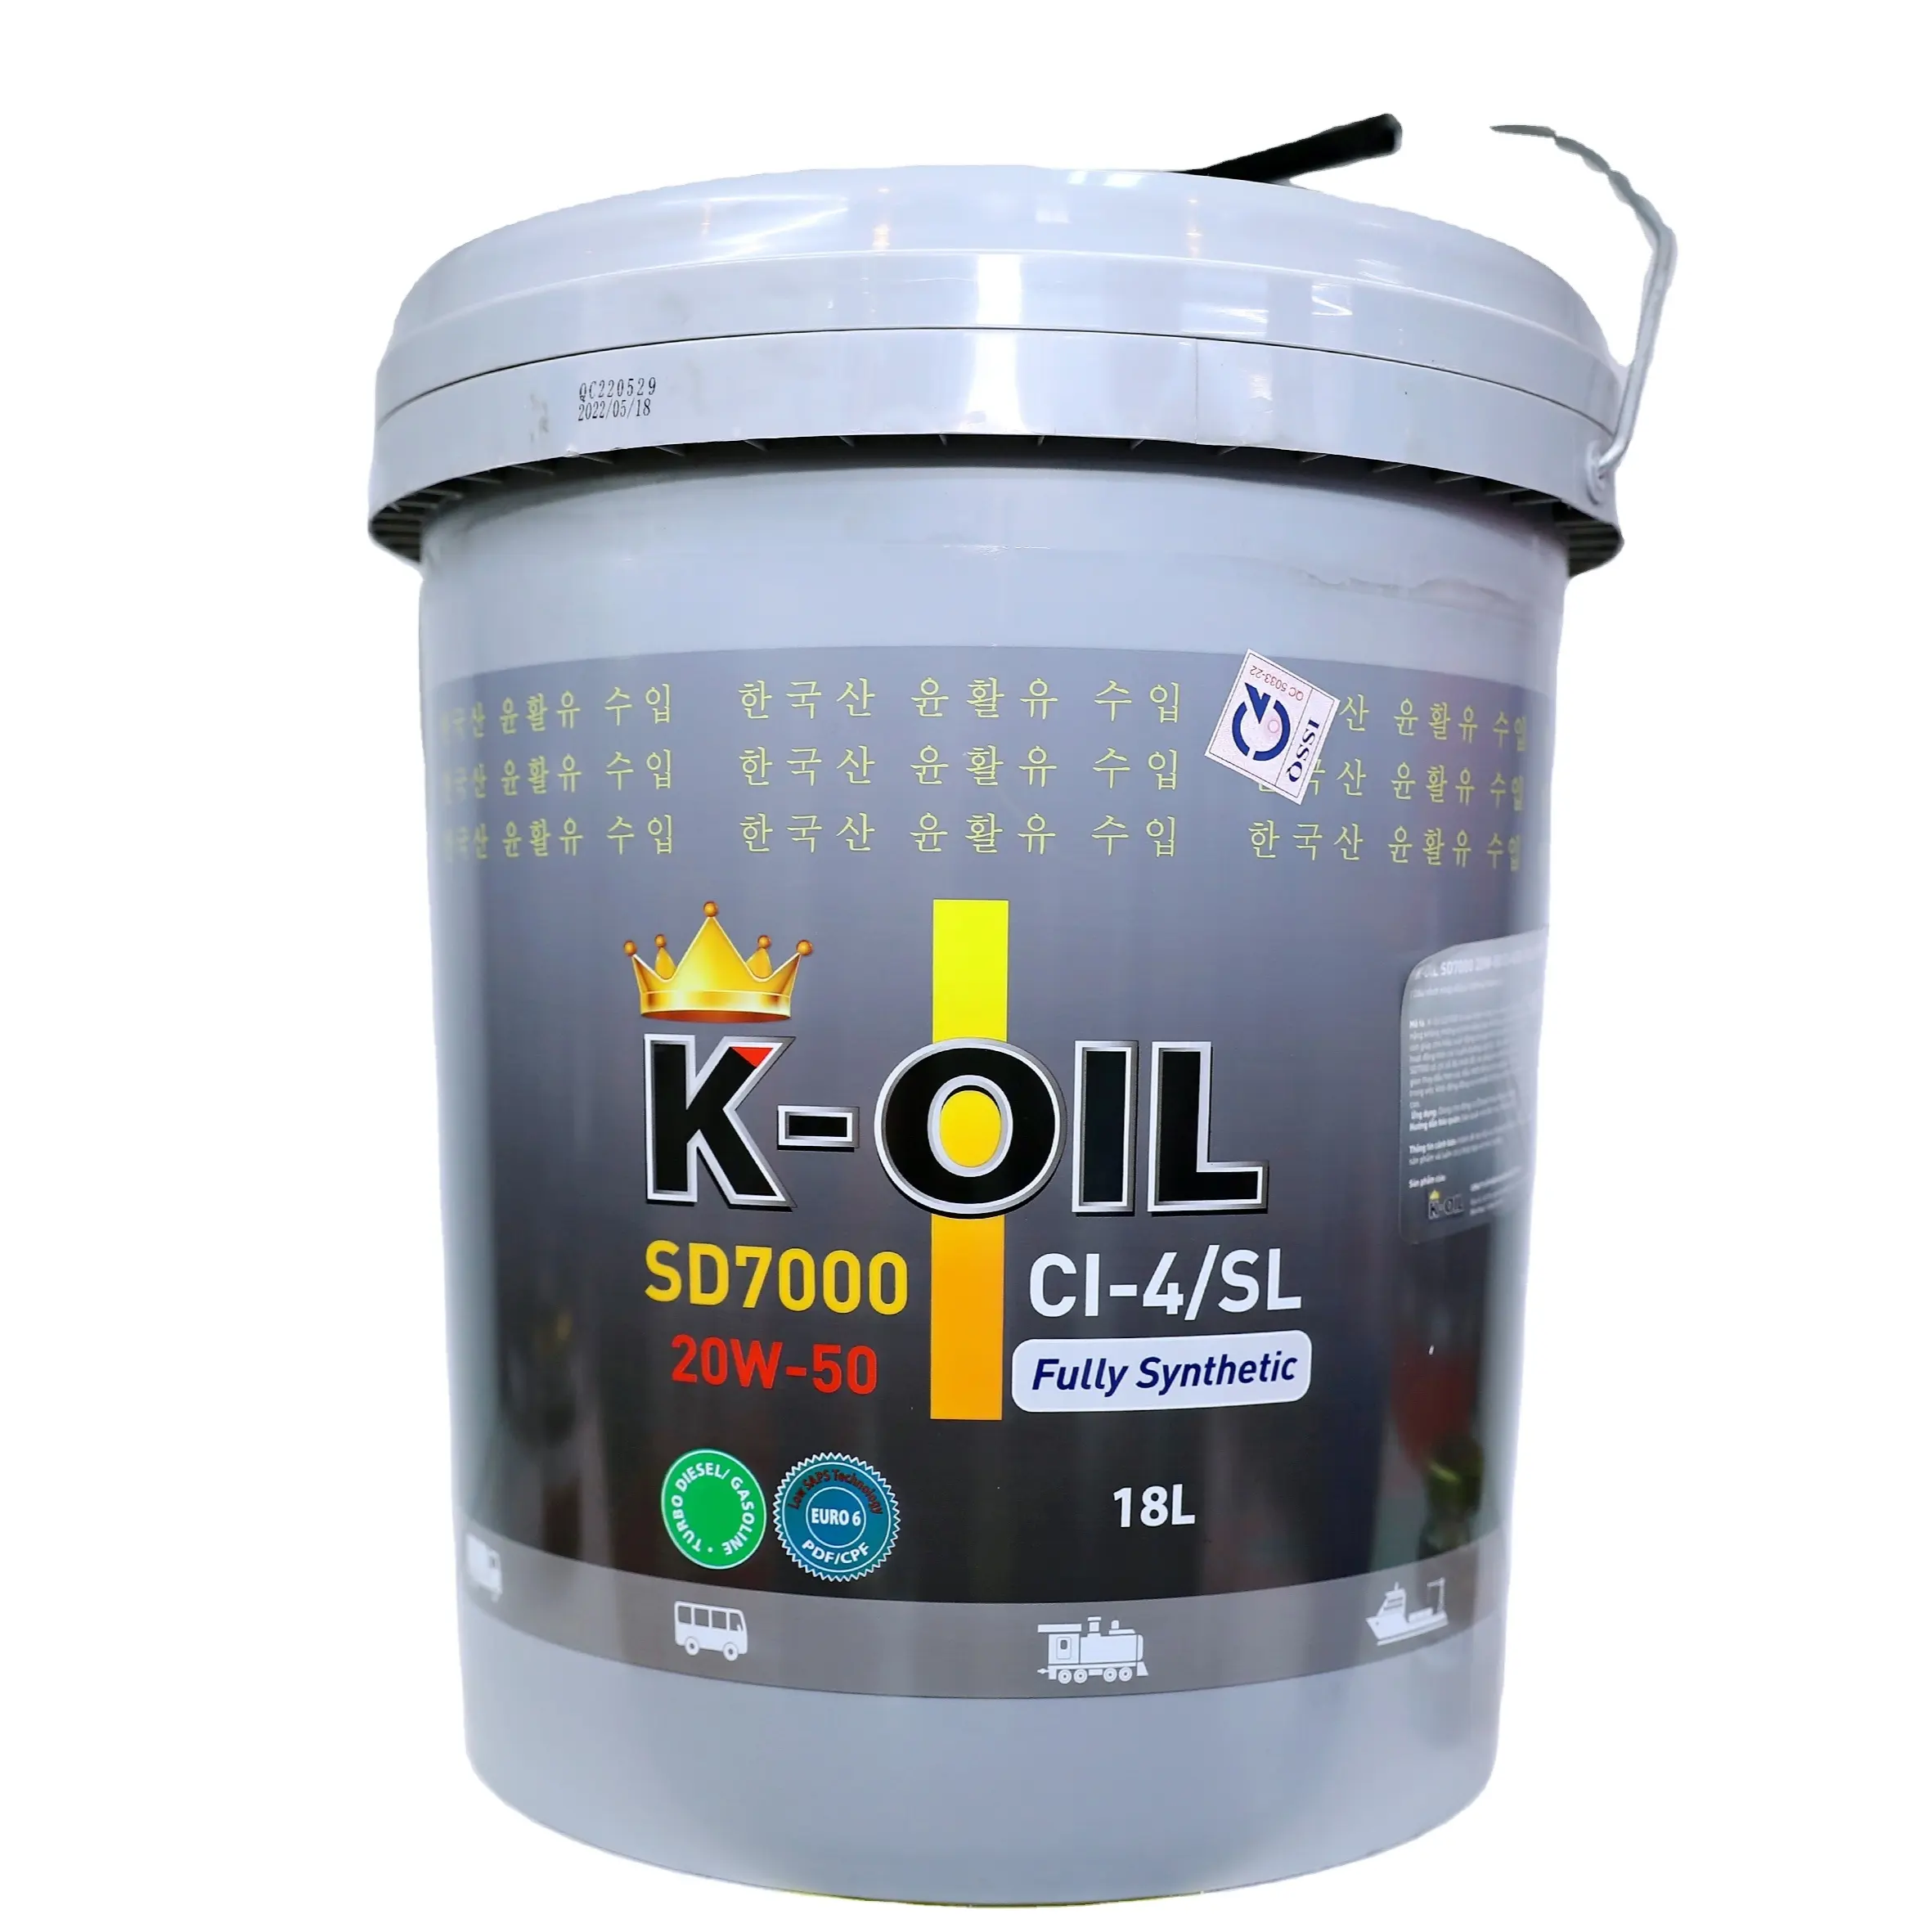 K-Oil SD7000 15W40/20W50 CI-4/SL полностью синтетическое масло, длительный срок службы и низкая цена применения дизельных двигателей